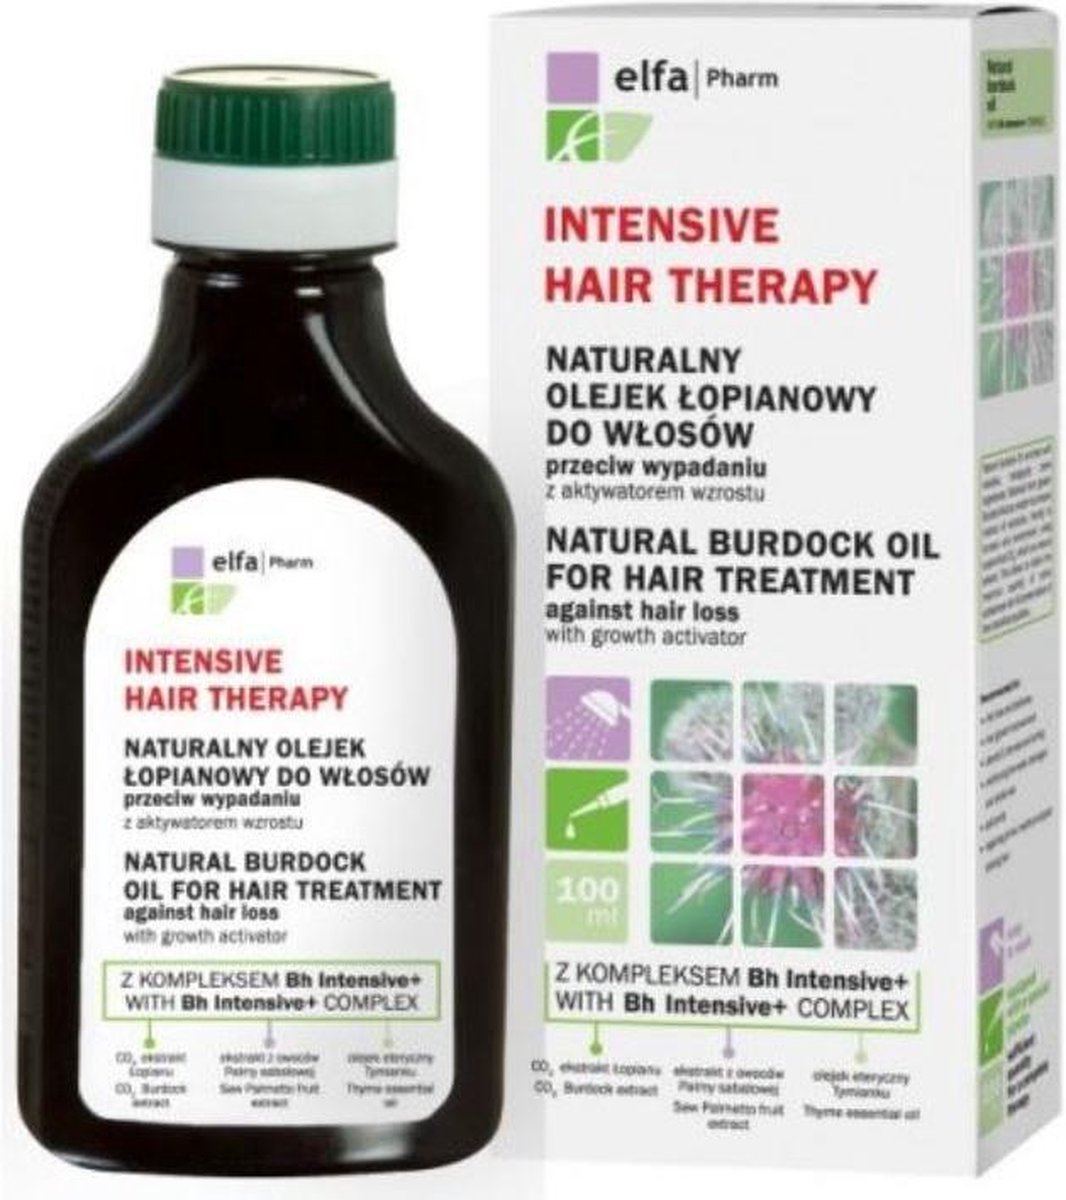 Elfa Pharm_intensive Hair Therapy Natural Burdock Oil Naturalny Olejek ?opianowy Do W?osi?1/2w Przeciw Wypadaniu Z Aktywatorem Wzrostu 100ml